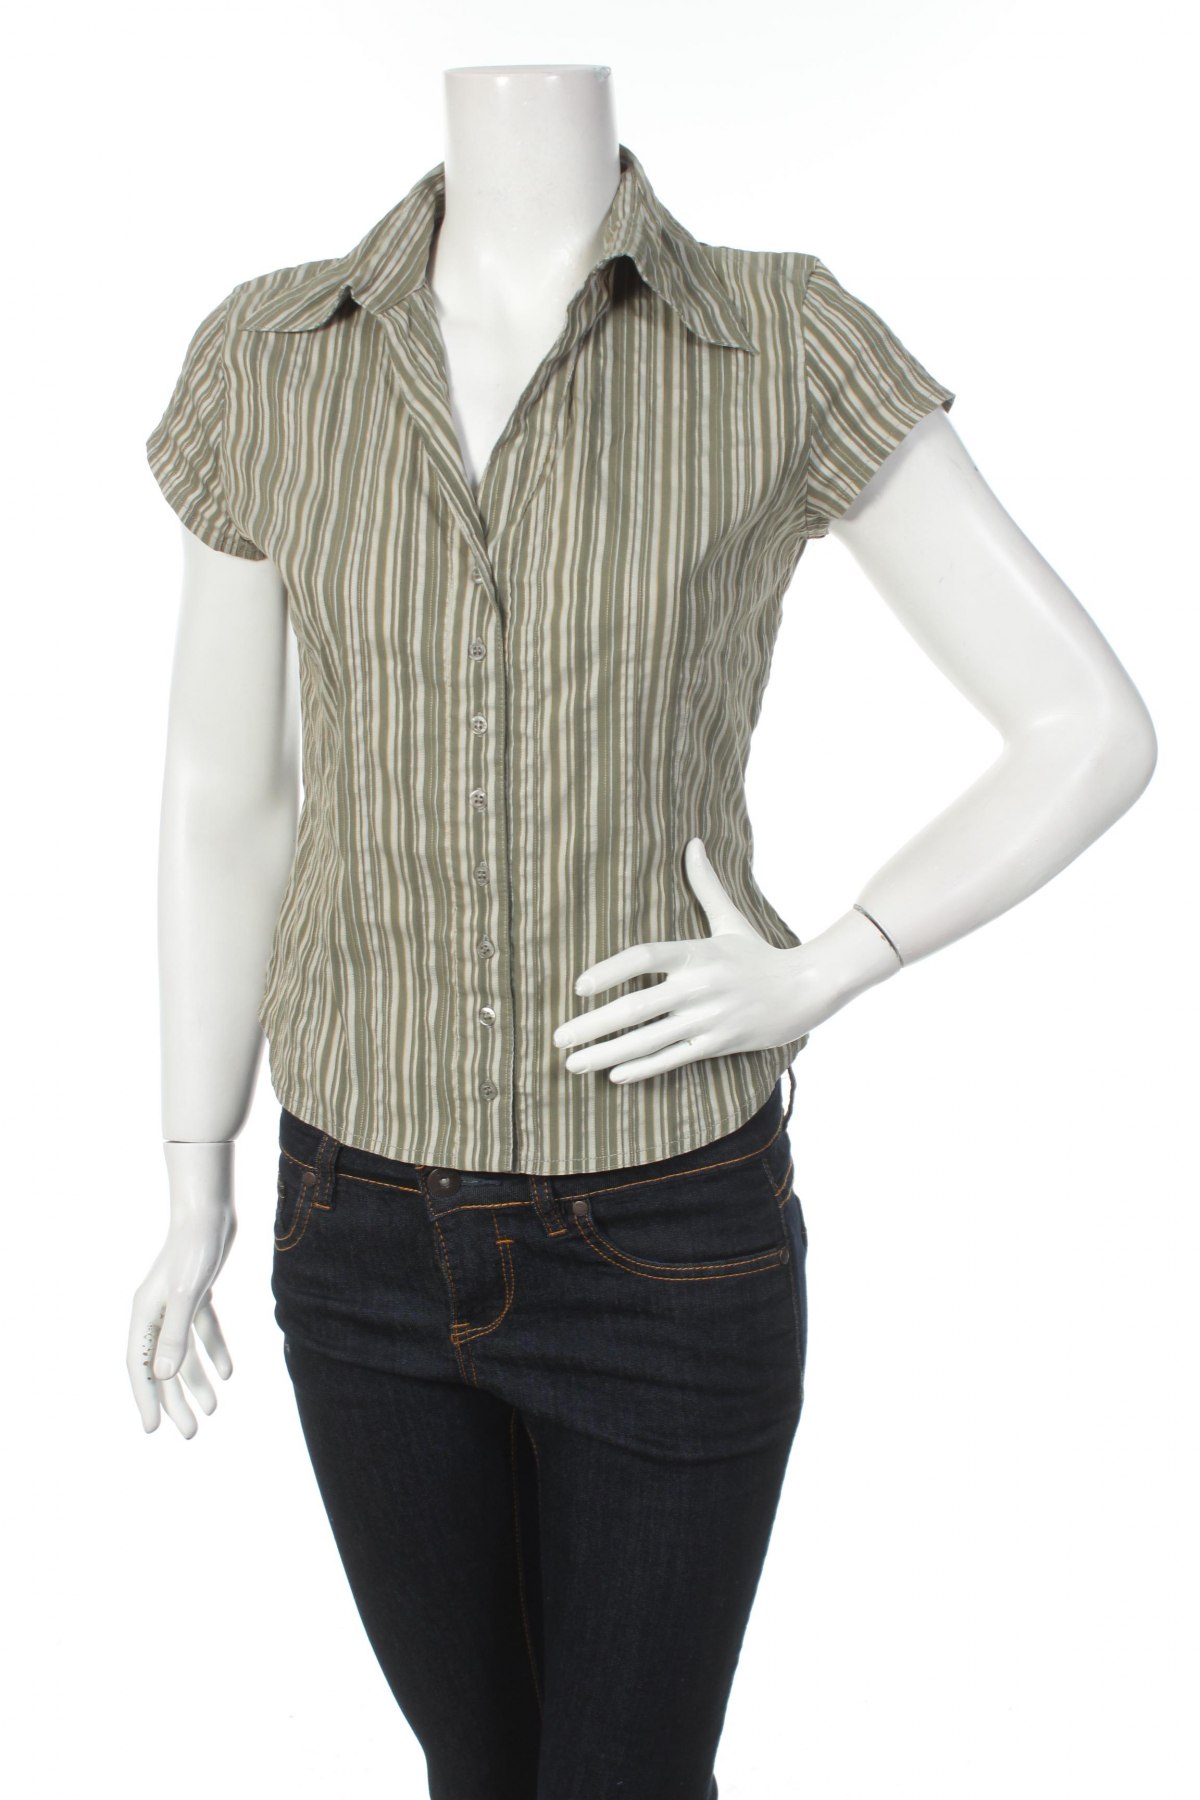 Γυναικείο πουκάμισο Xanaka, Μέγεθος S, Χρώμα Πράσινο, Τιμή 10,52 €